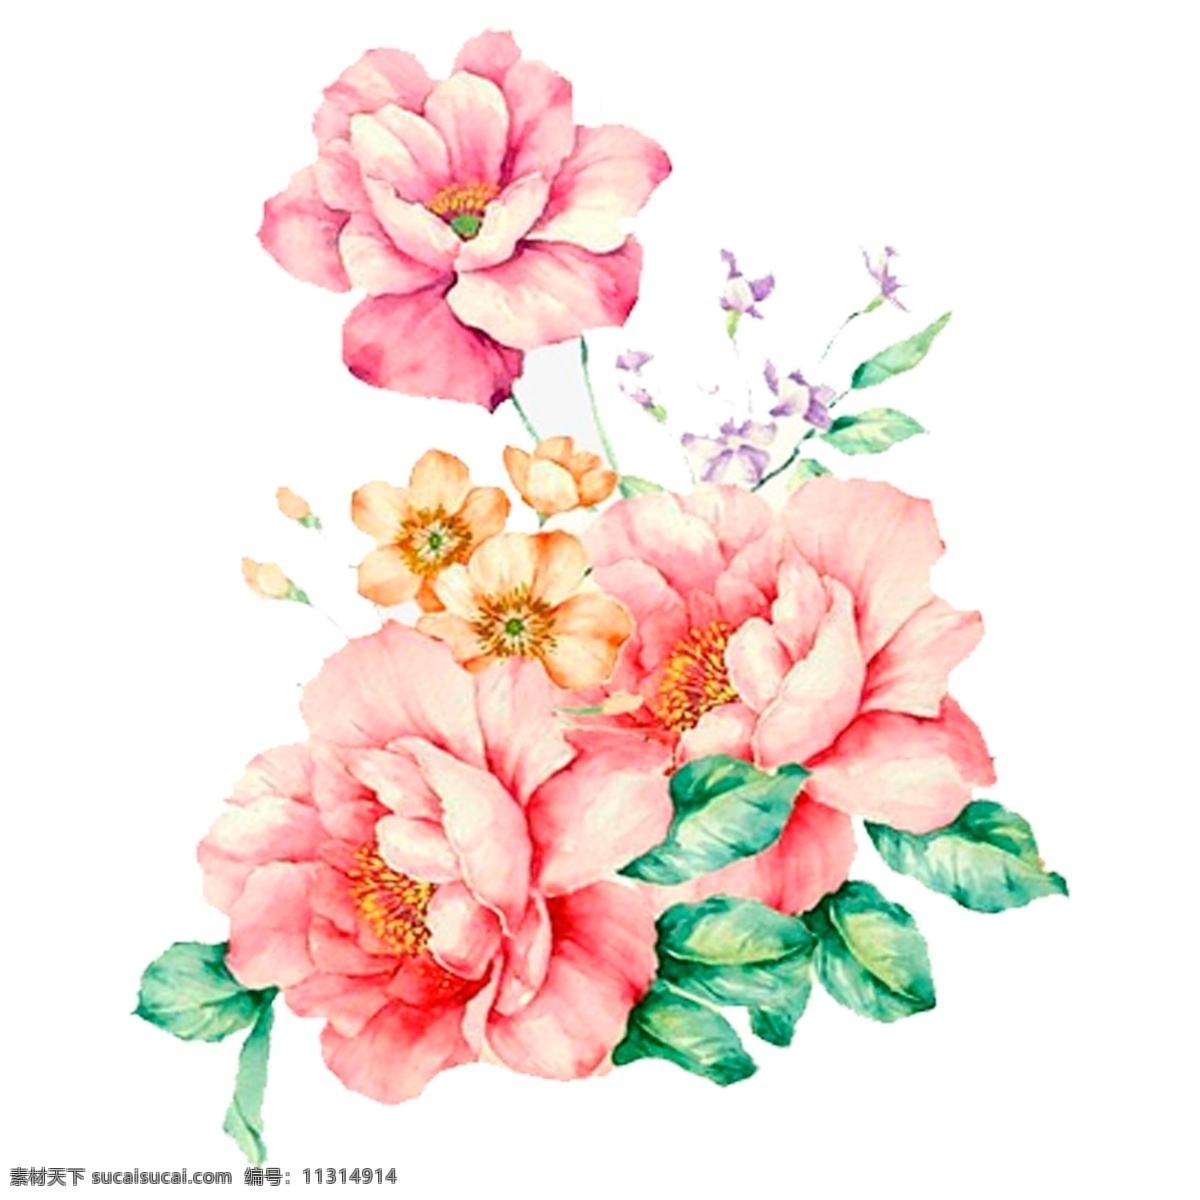 手绘 玫瑰 花卉 透明 卡通素材 花朵 叶子 透明素材 水彩 免 扣